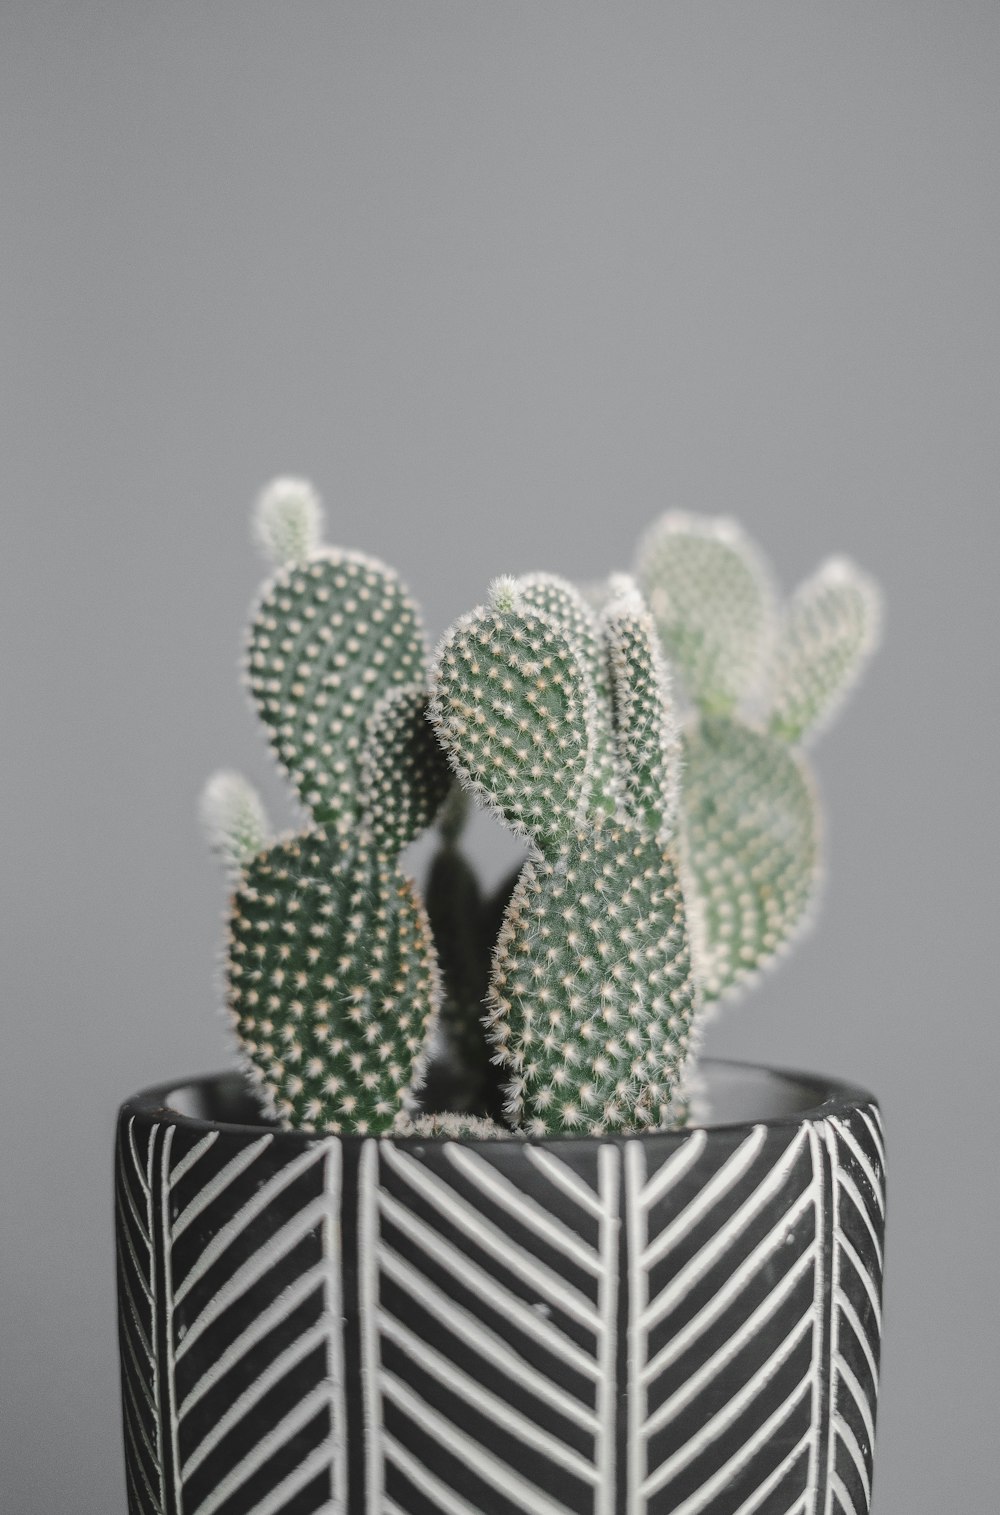 Cactus verde en maceta de cerámica blanca y negra